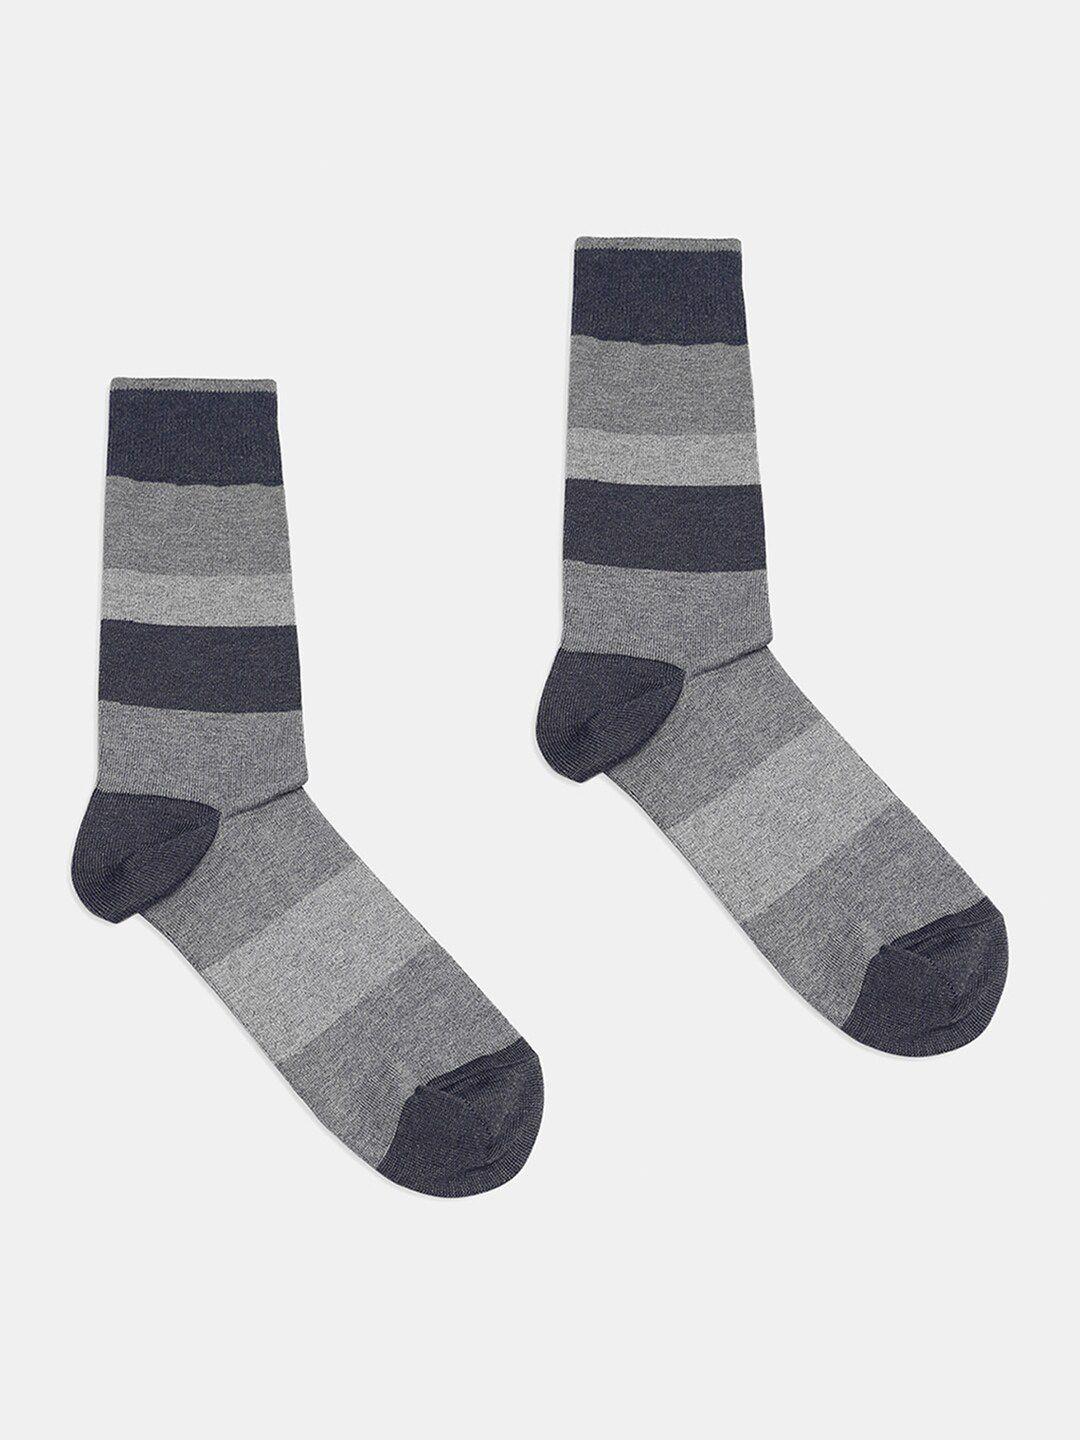 blackberrys-men-patterned-calf-length-ribbed-socks